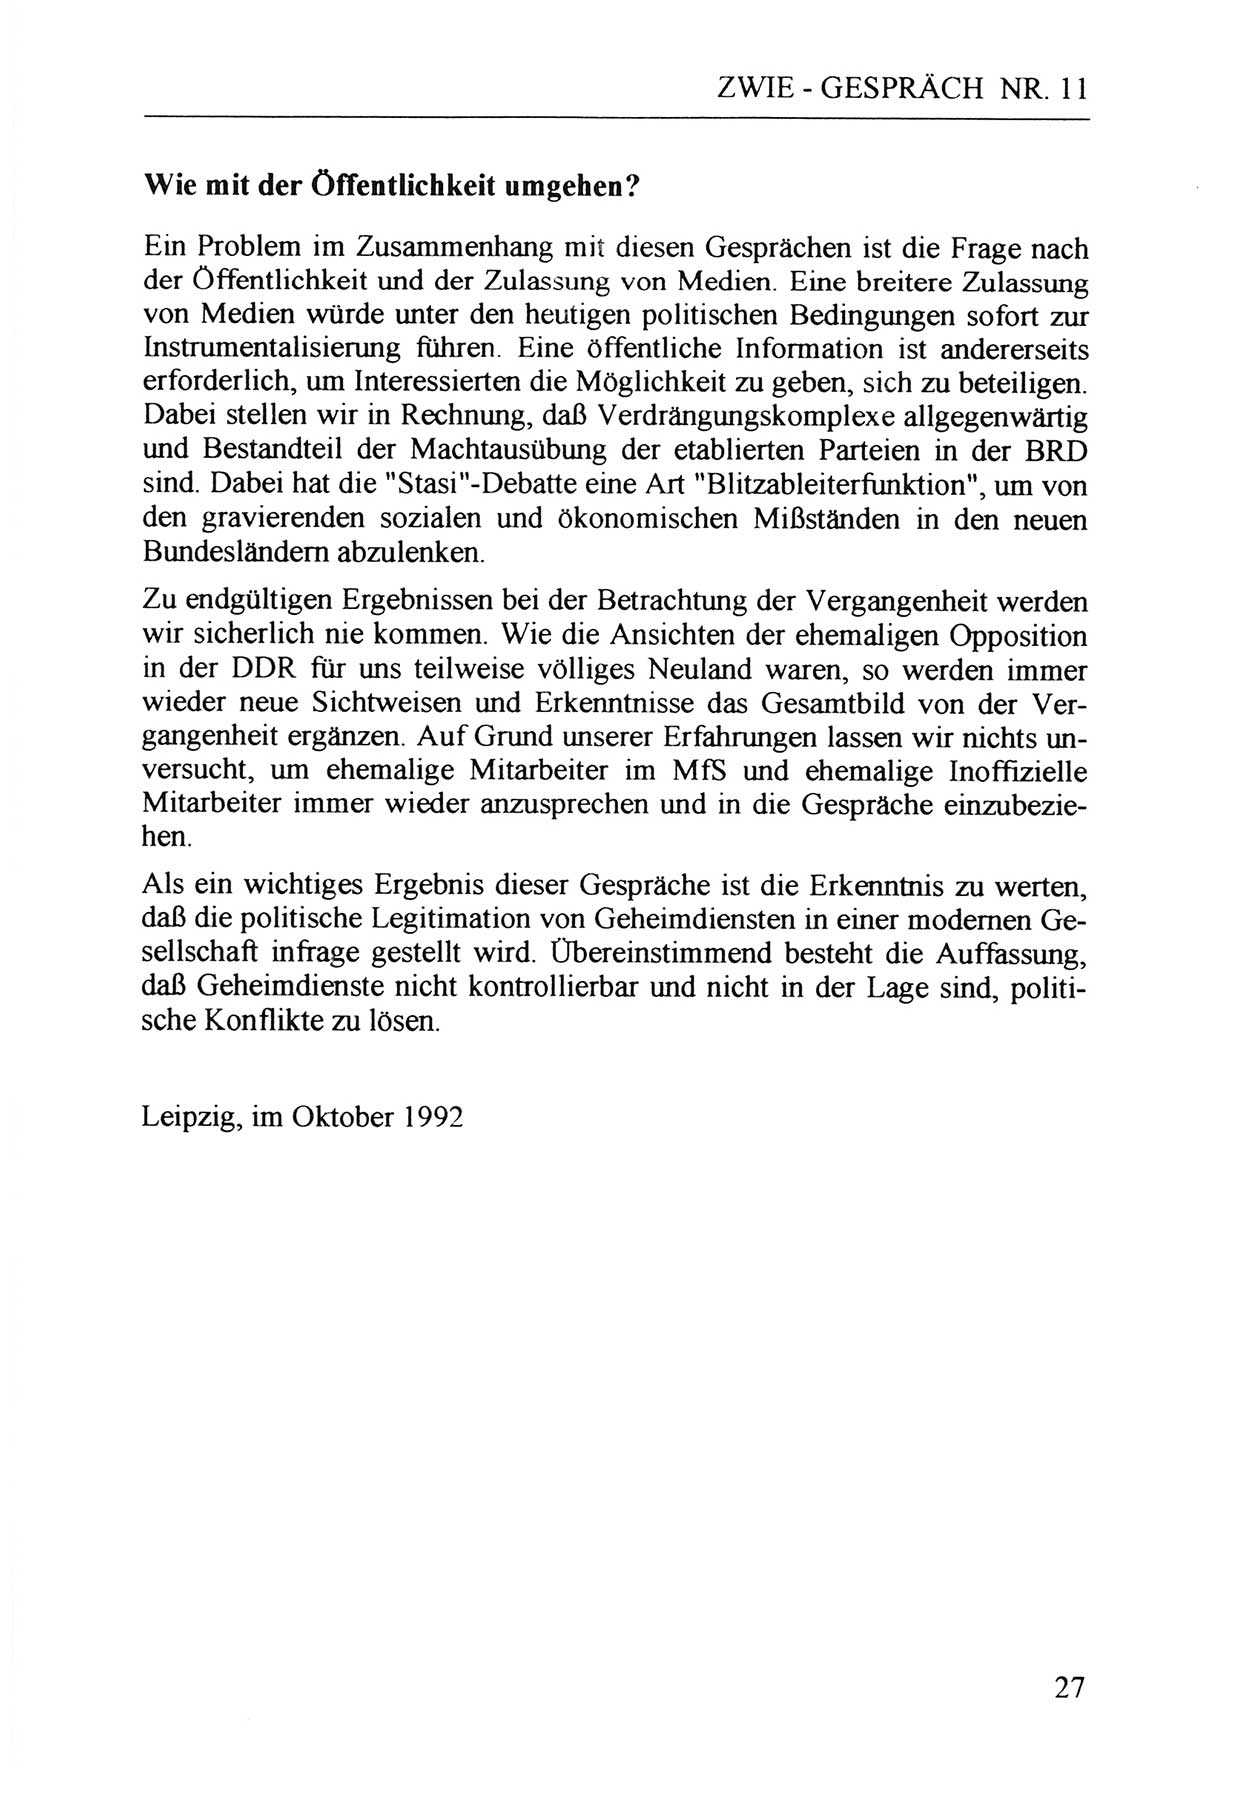 Zwie-Gespräch, Beiträge zur Aufarbeitung der Staatssicherheits-Vergangenheit [Deutsche Demokratische Republik (DDR)], Ausgabe Nr. 11, Berlin 1992, Seite 27 (Zwie-Gespr. Ausg. 11 1992, S. 27)